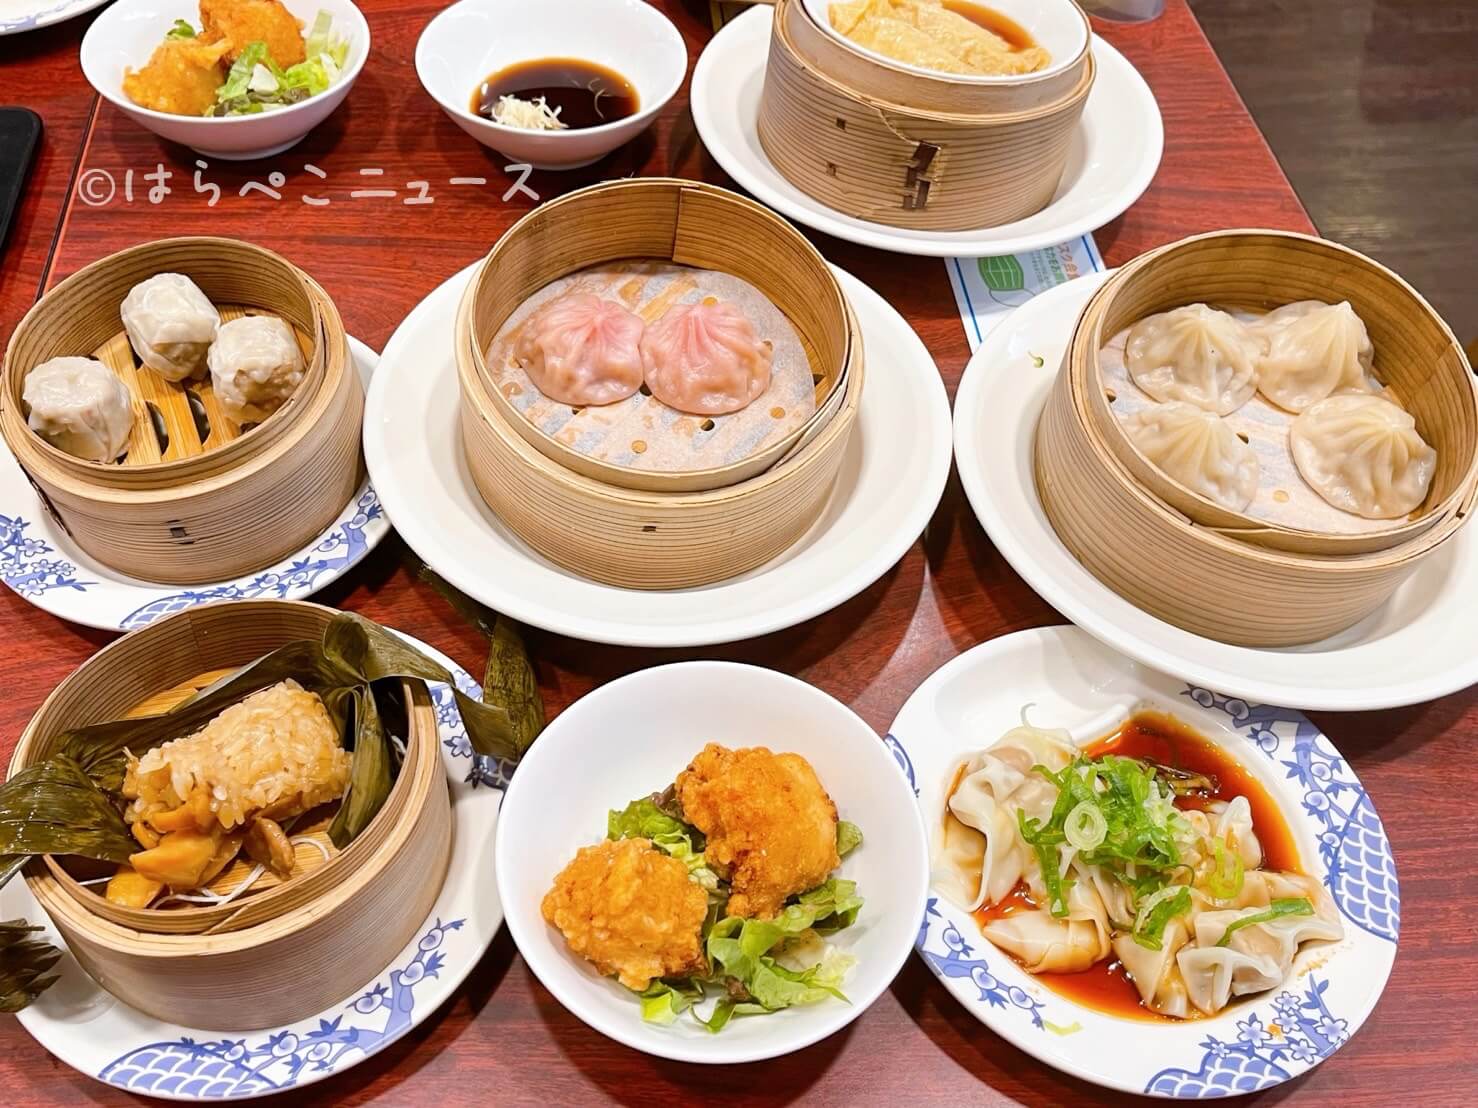 実食レポ バーミヤン 飲茶食べ放題 北京ダックや蟹入り小籠包など点心 台湾カステラやはちみつ揚げパンも はらぺこニュース